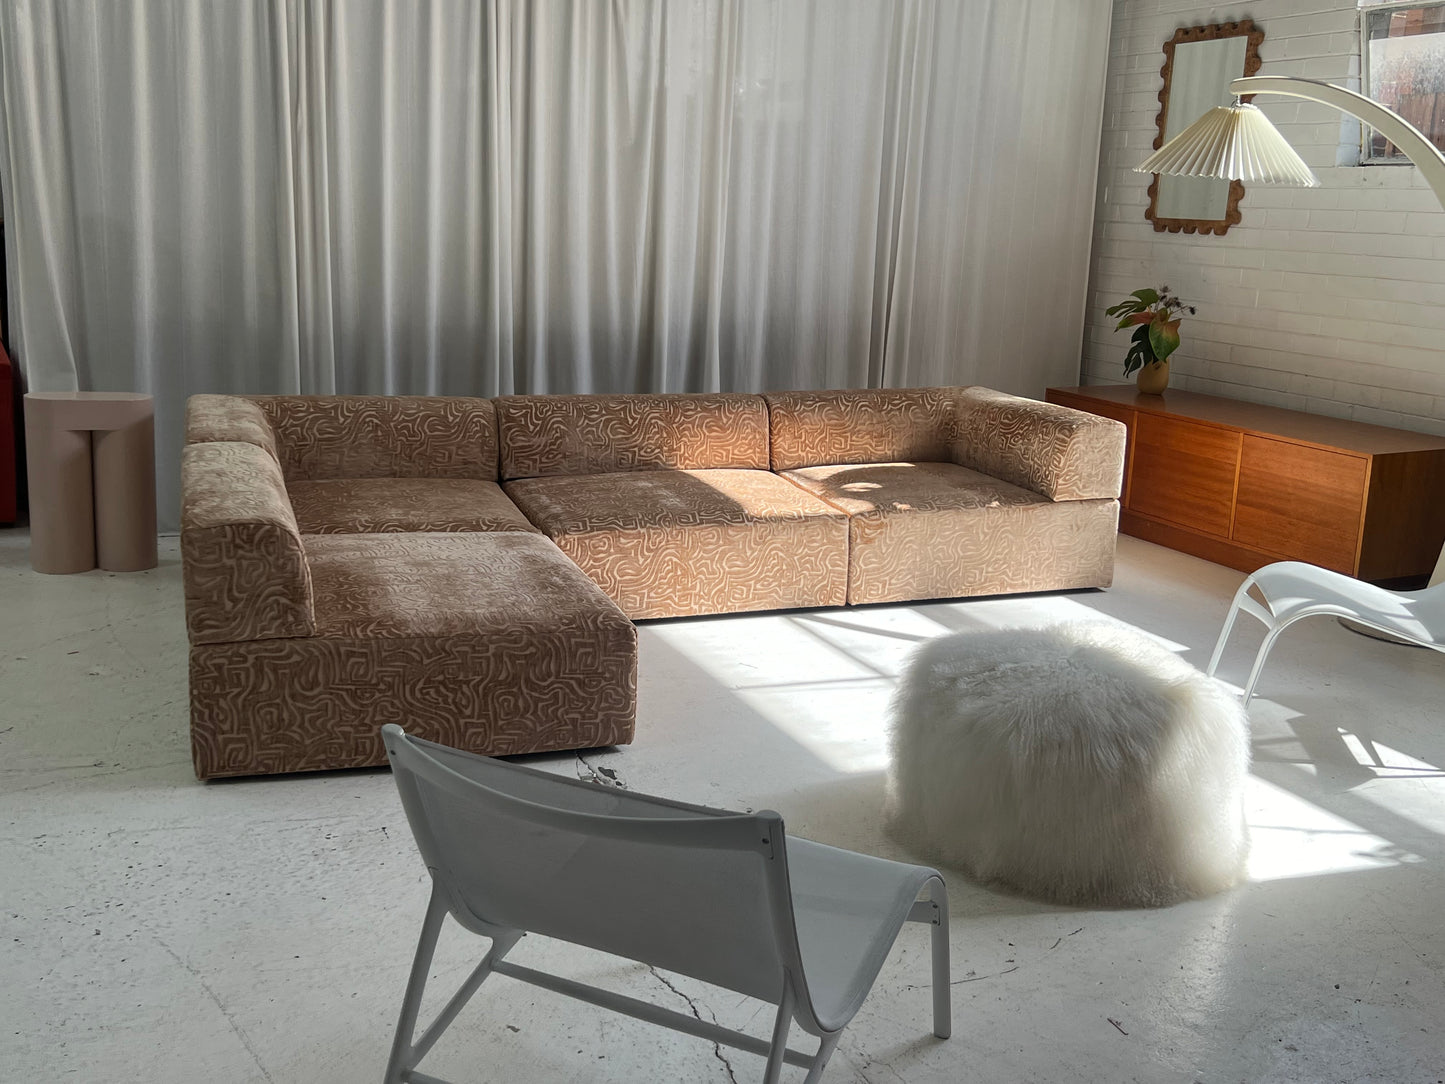 Bespoke Patterned Block Modular Sofa Set